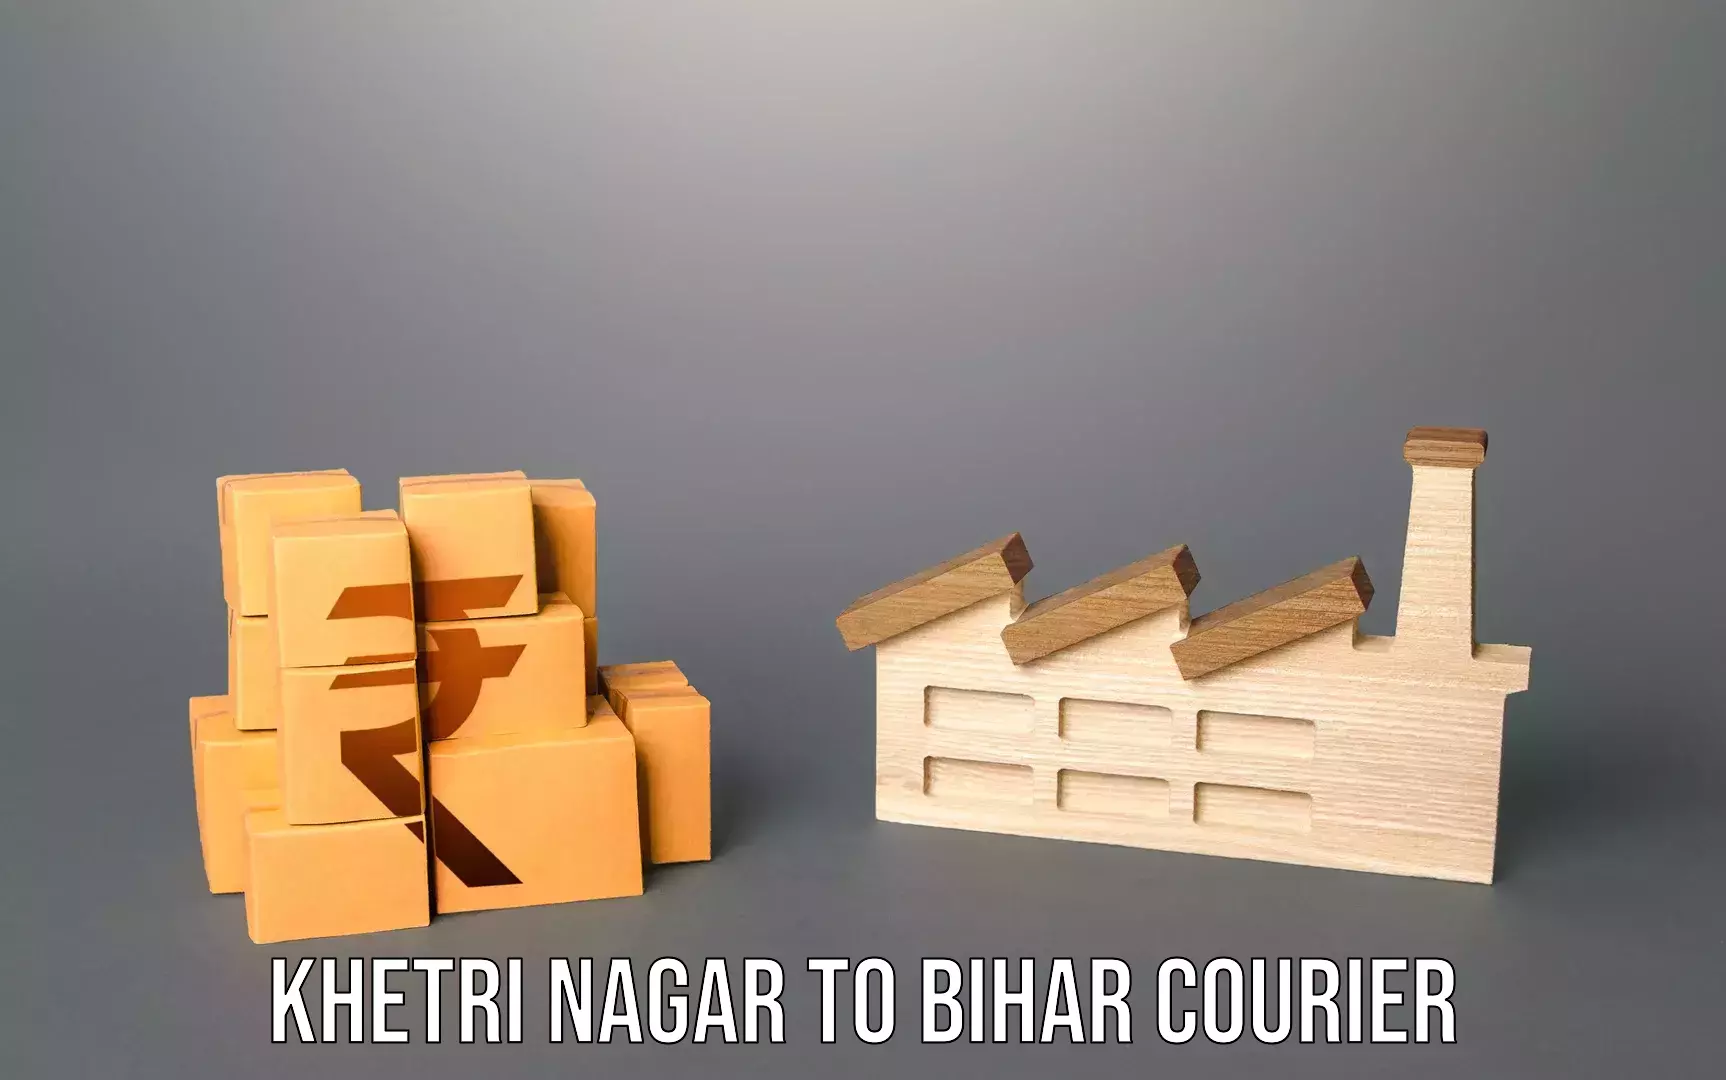 Baggage delivery technology Khetri Nagar to Gaya